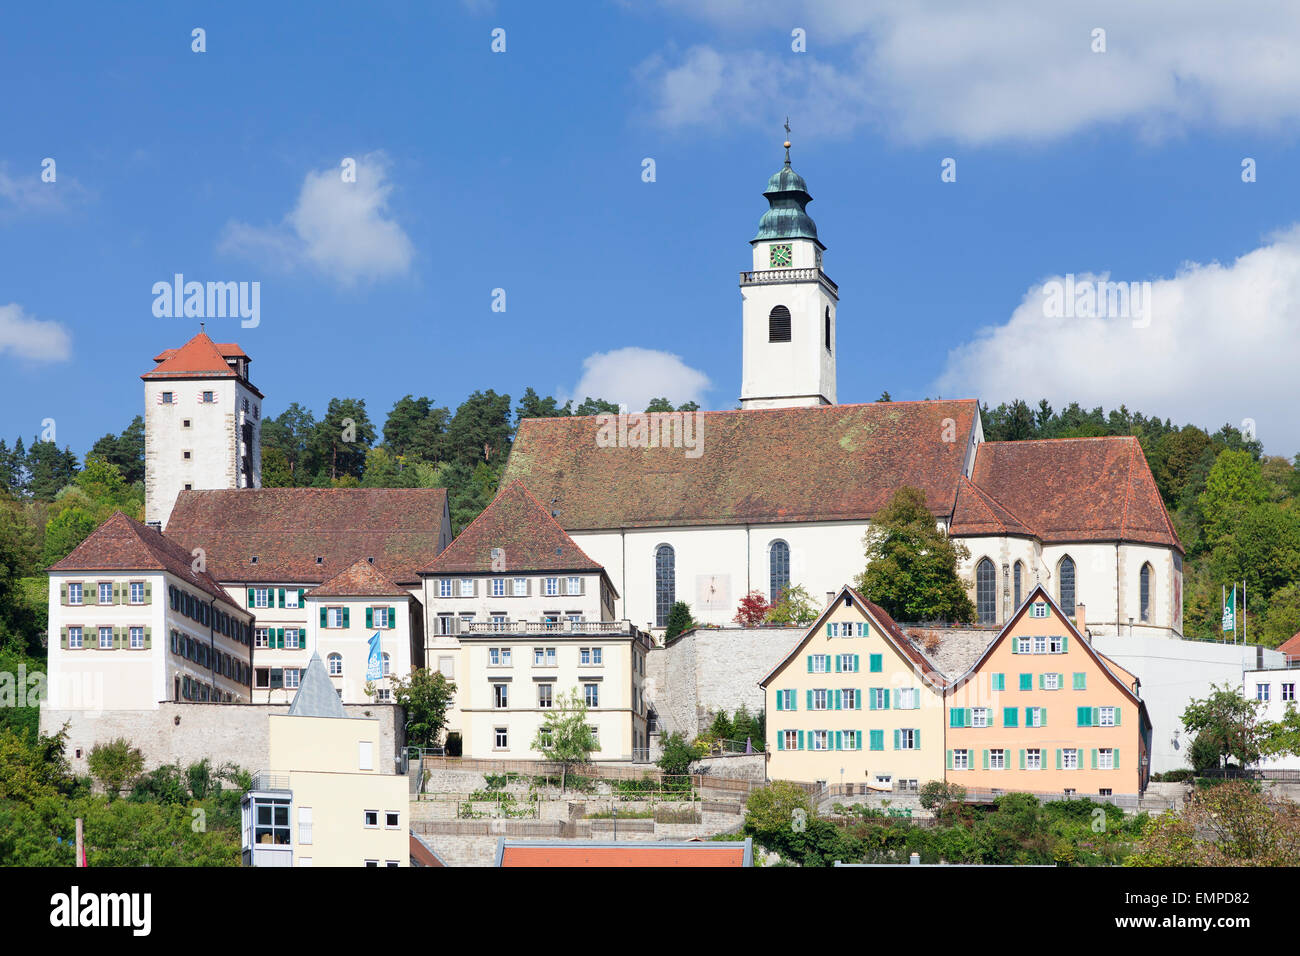 Ehemaliges Dominikanerkloster mit Stiftskirche Heilig Kreuz oder Heilig Kreuz Stiftskirche und Schurkenturm Tower, Horb am Neckar Stockfoto